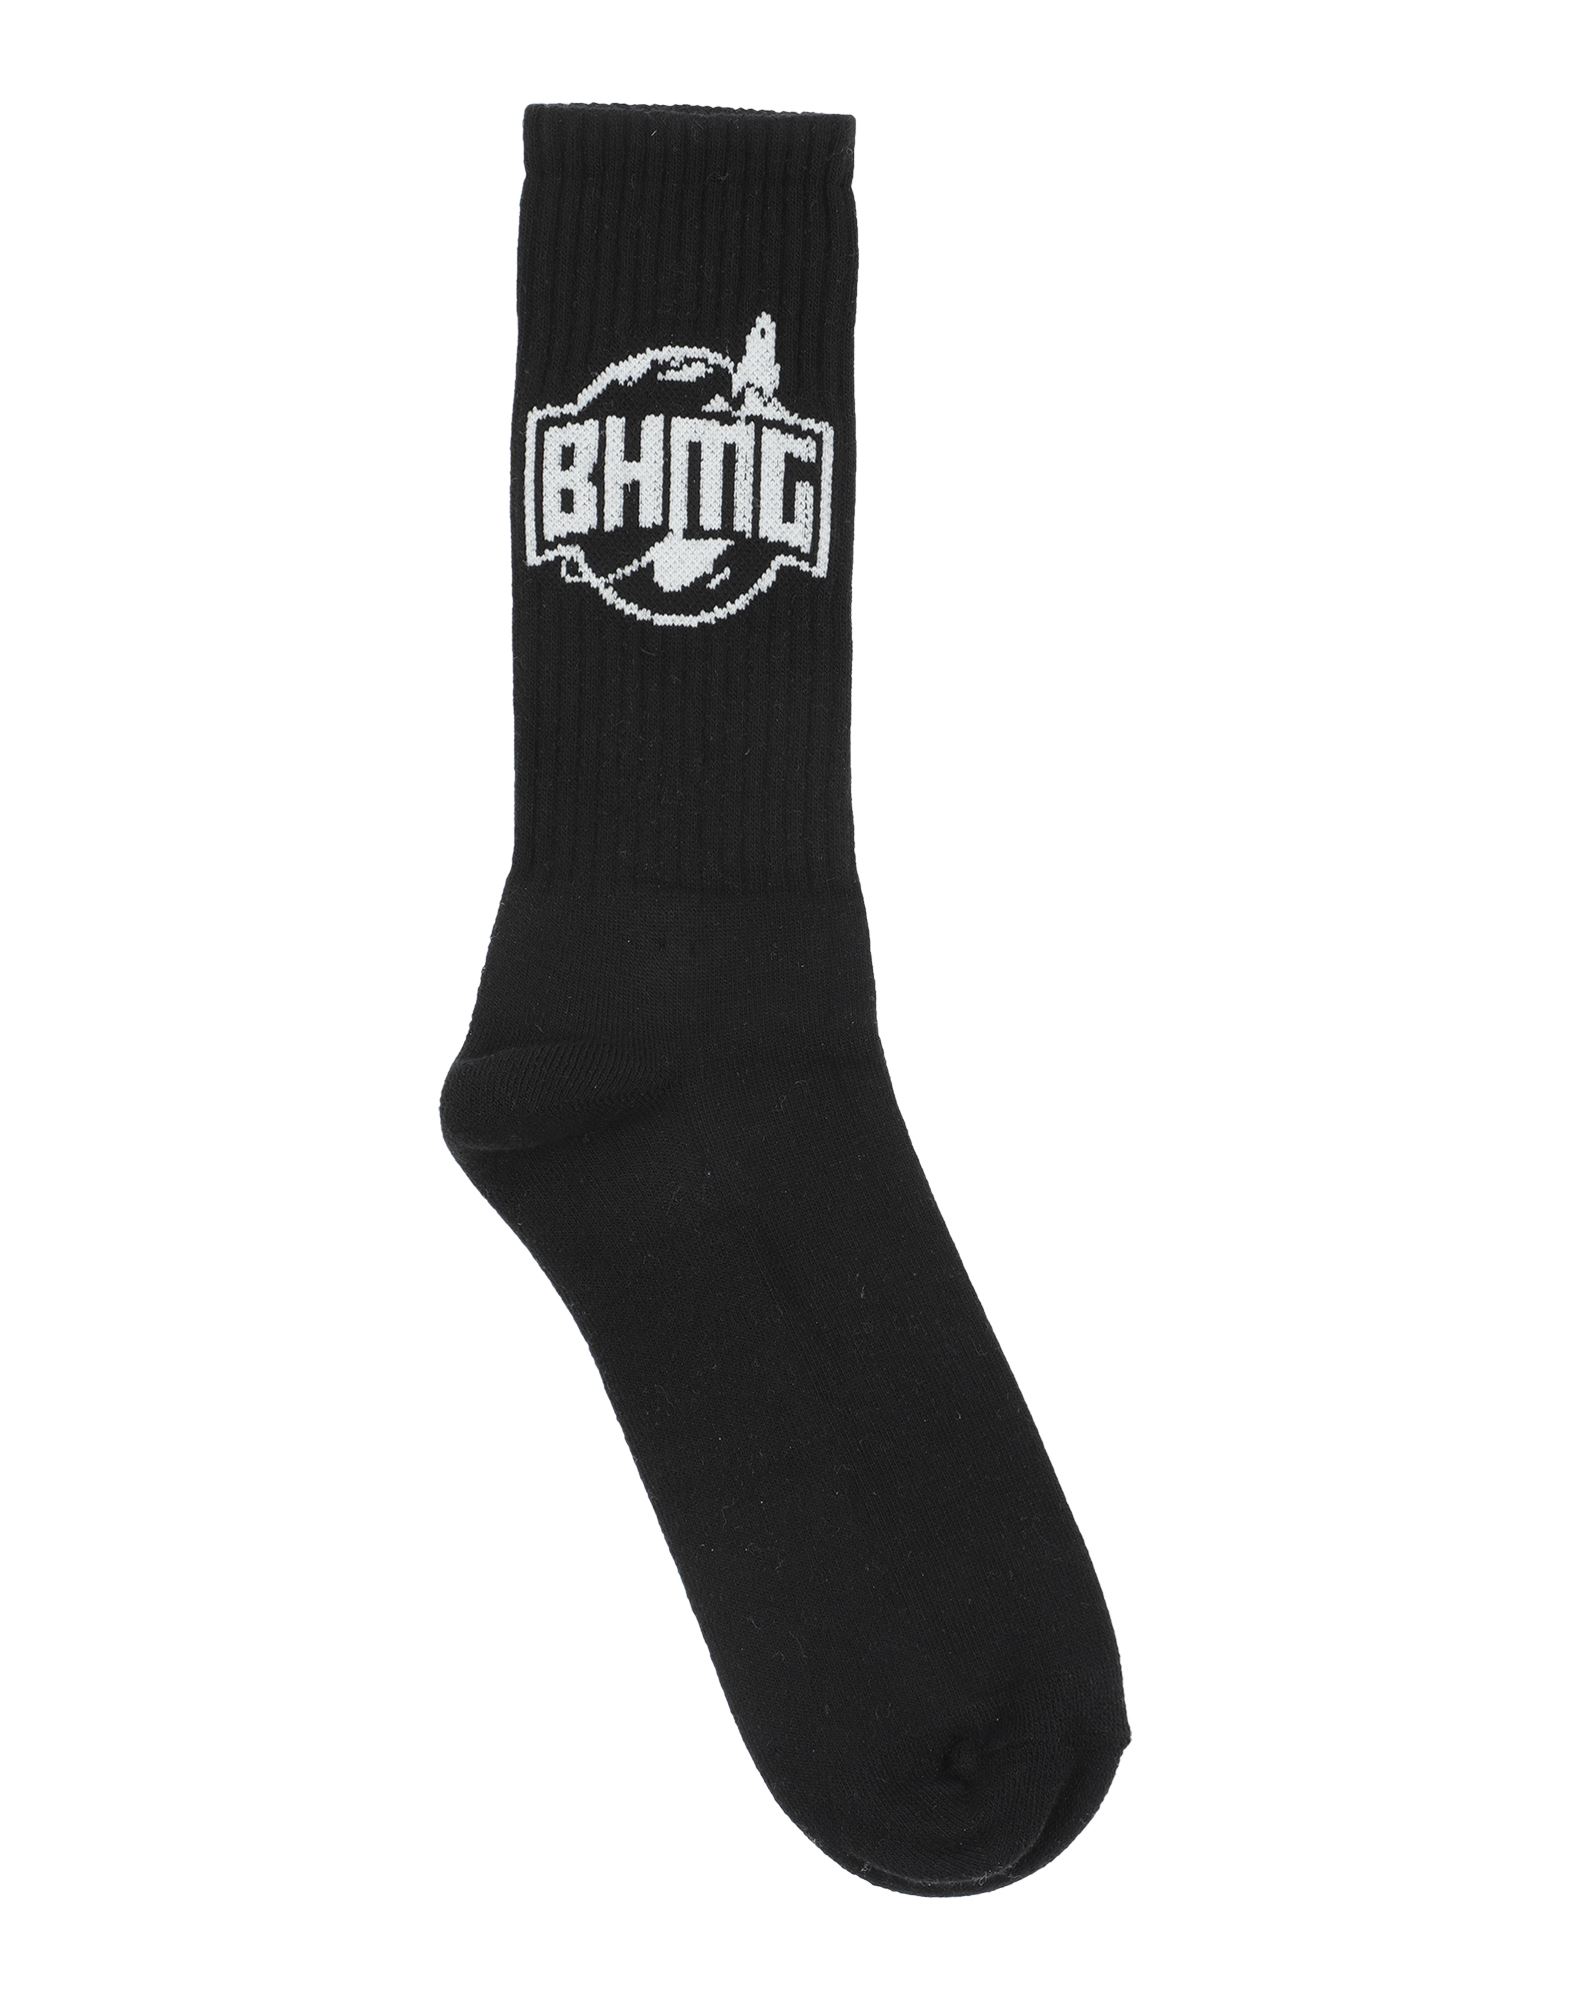 BHMG Socks & Hosiery